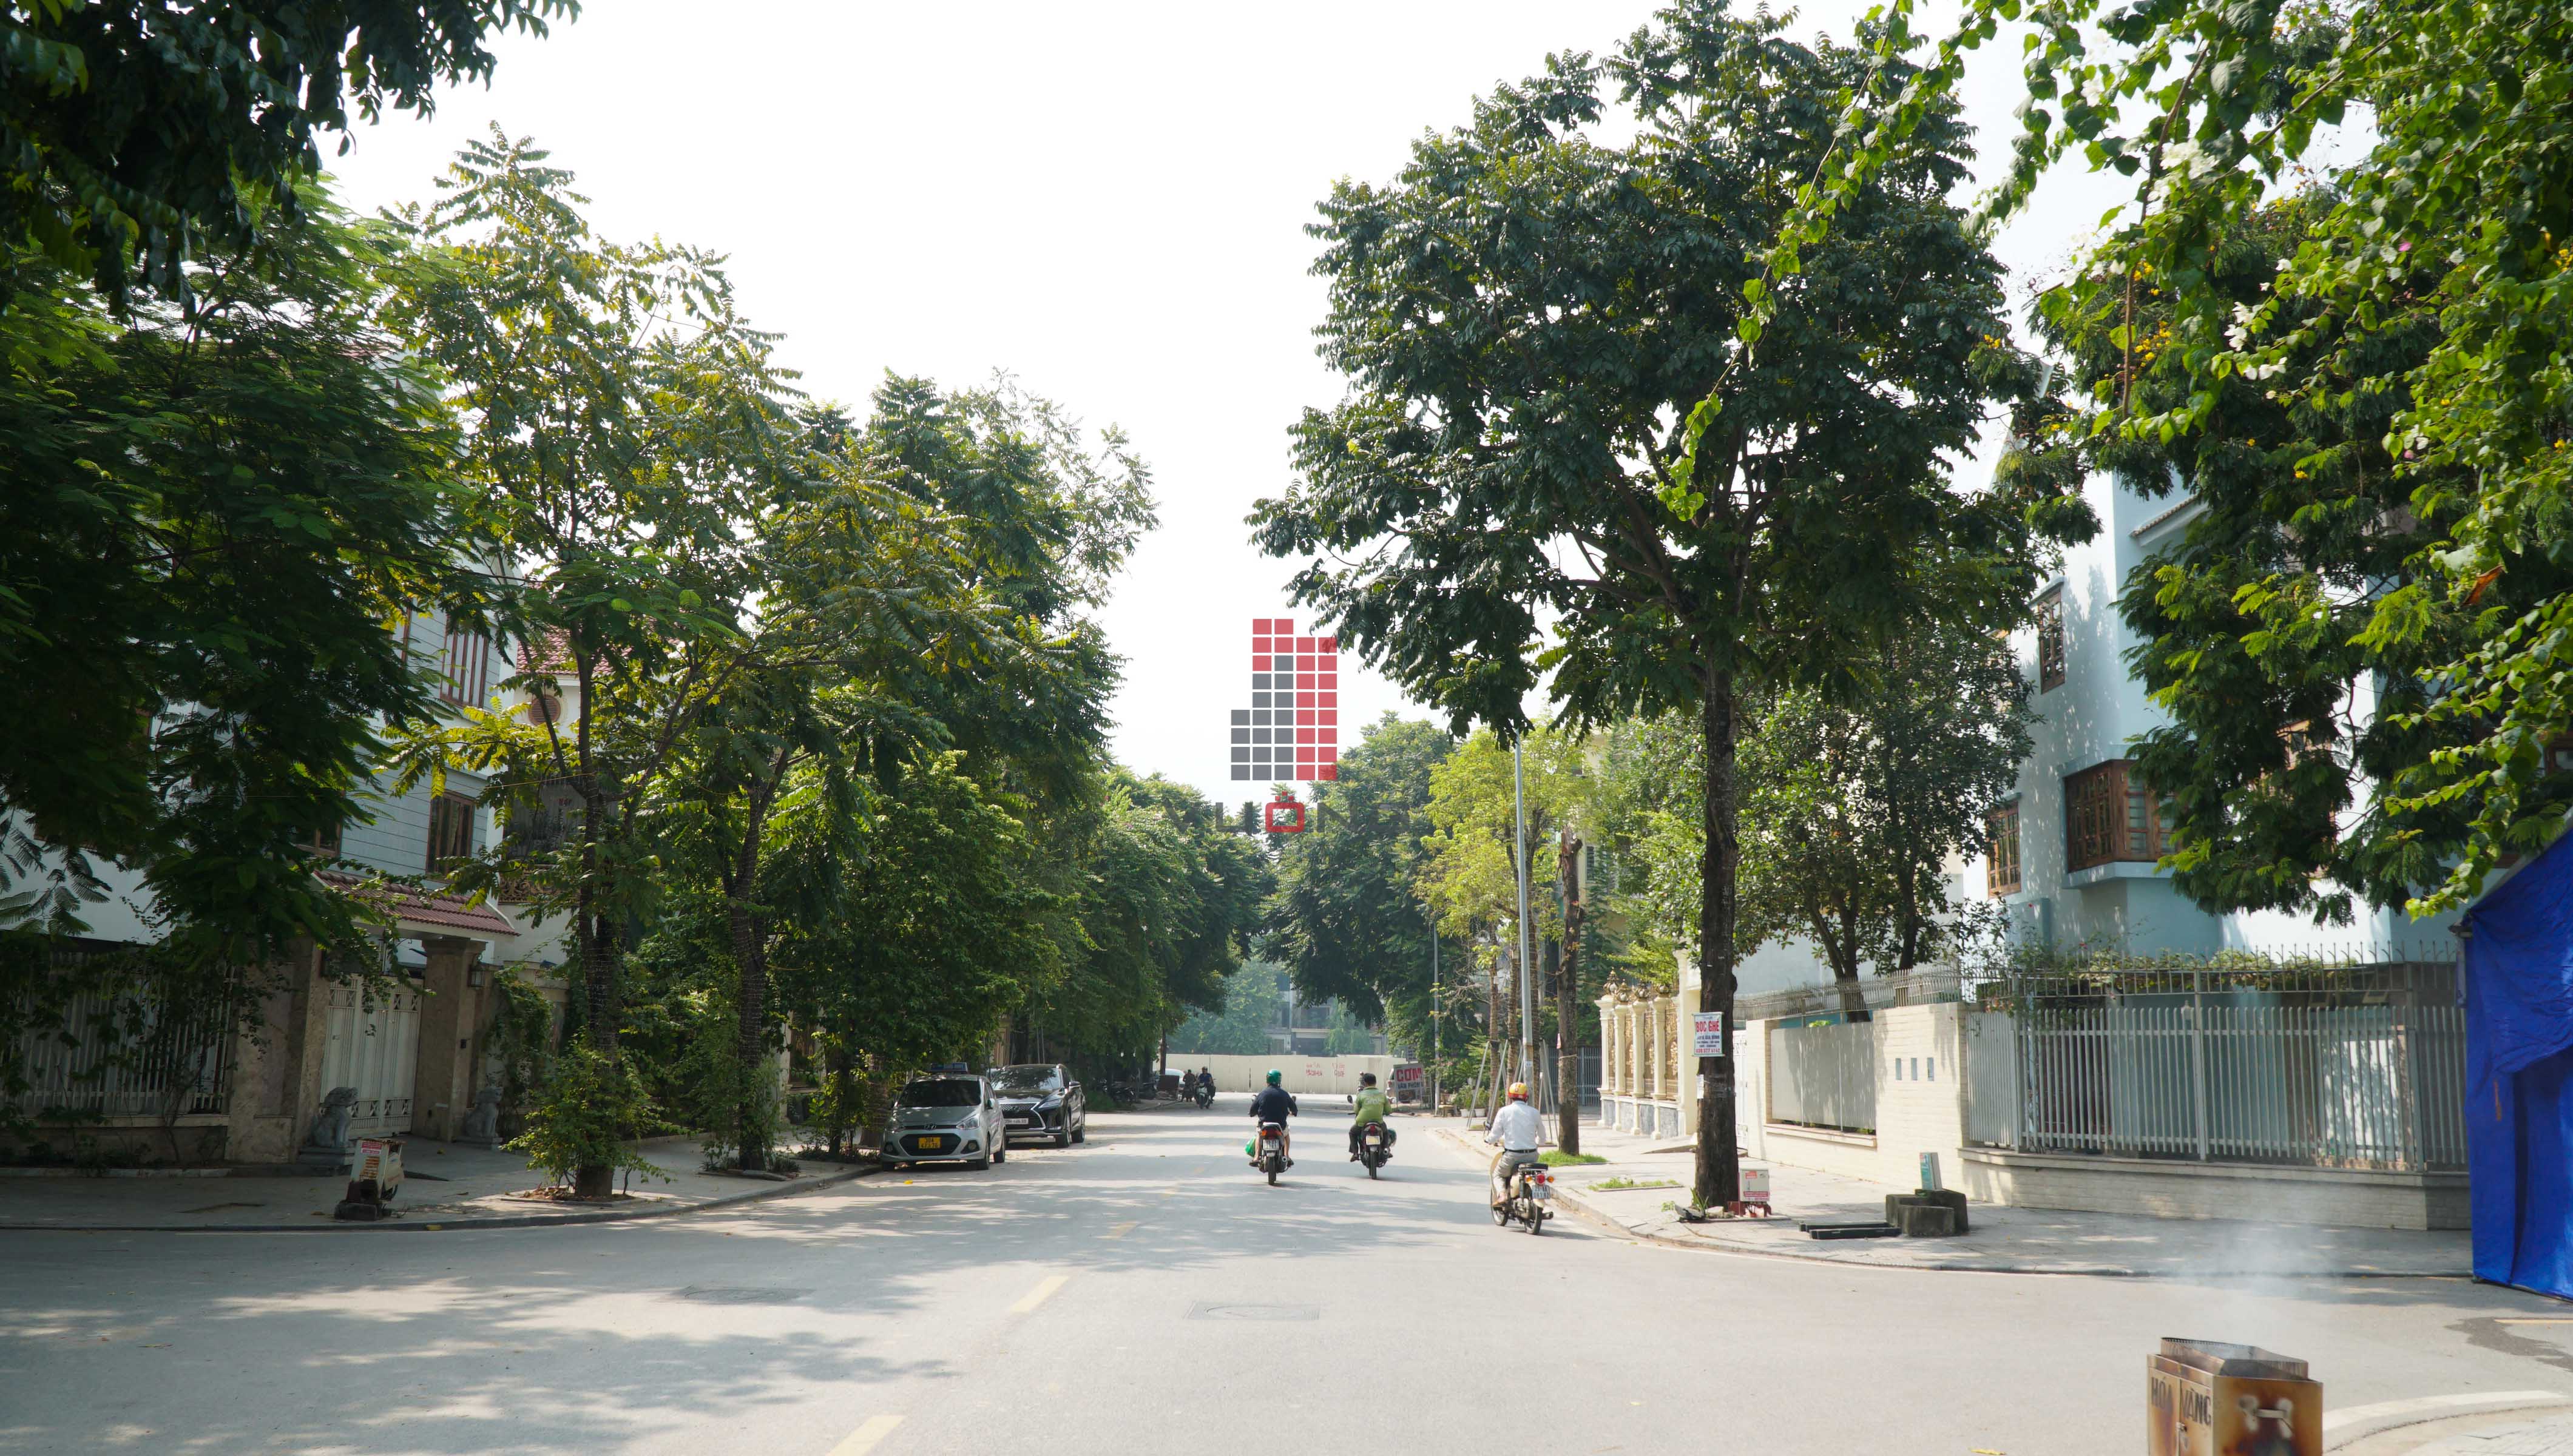 Bán nhà Biệt thự phân khu BTVP, mặt đường 16.5m, nhà hướng Tây - Bắc, Khu đô thị Văn Phú [#H1852.1618]